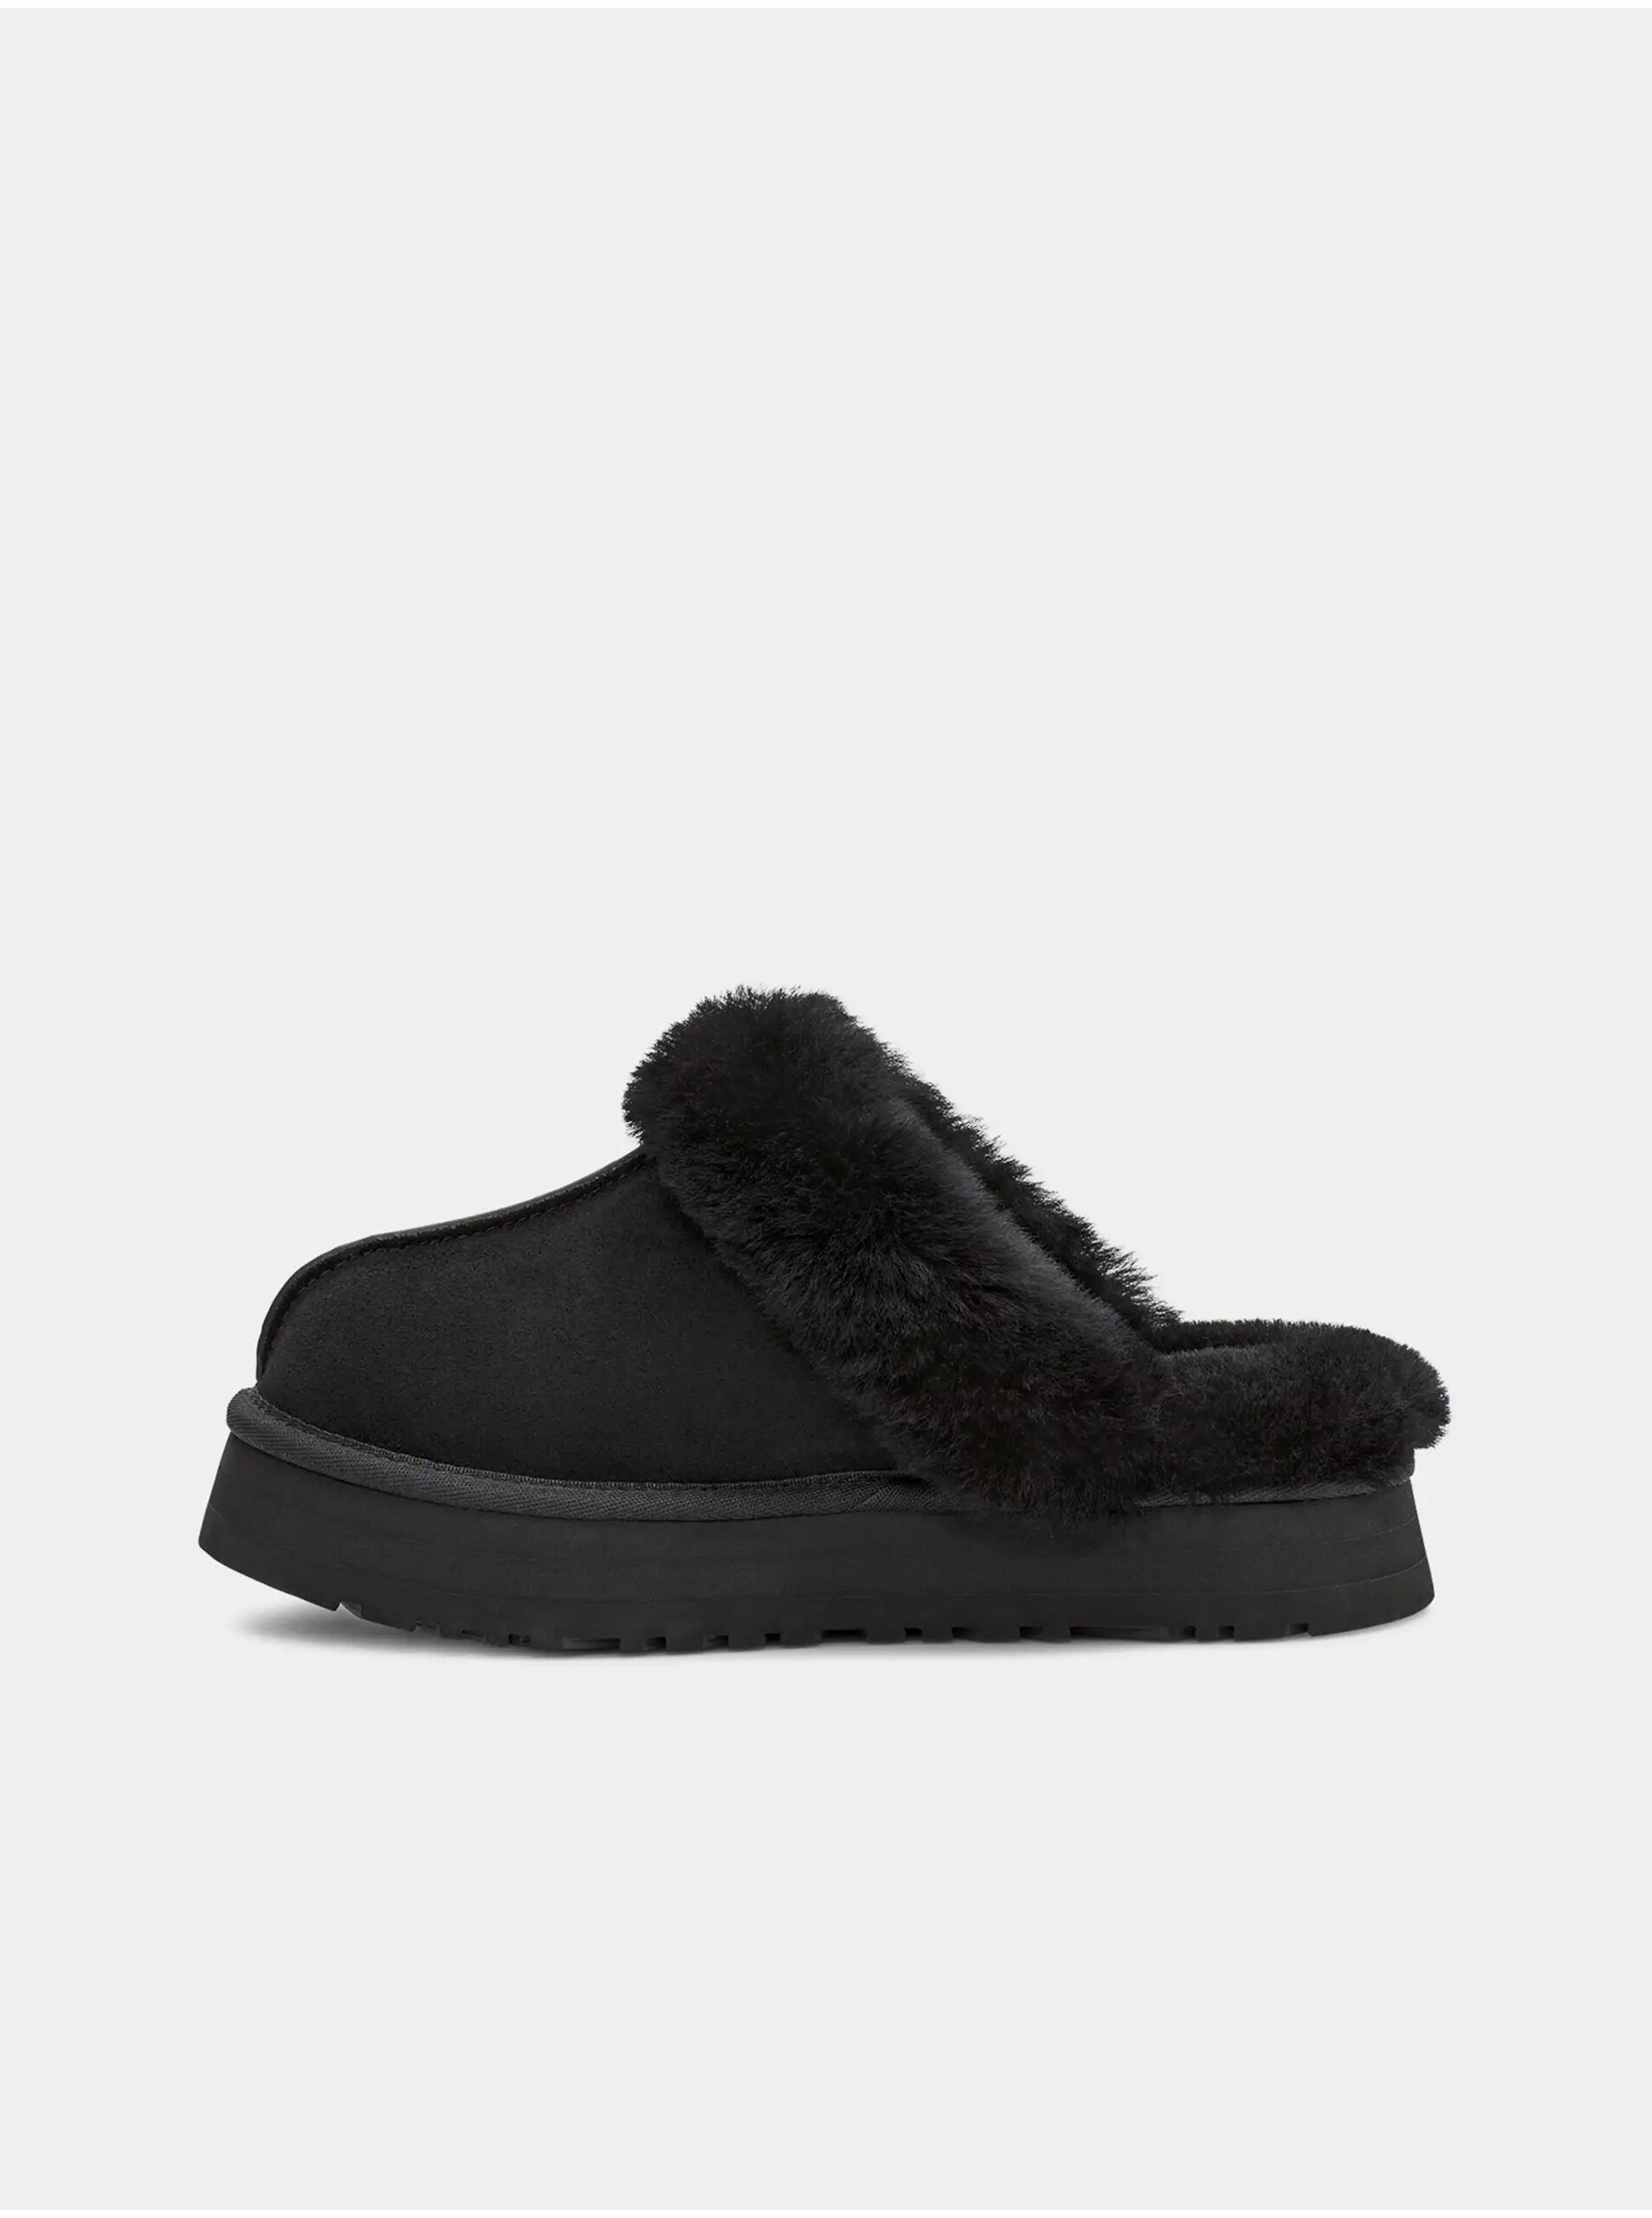 E-shop Černé dámské semišové pantofle s ovčí kožešinou UGG Disquette